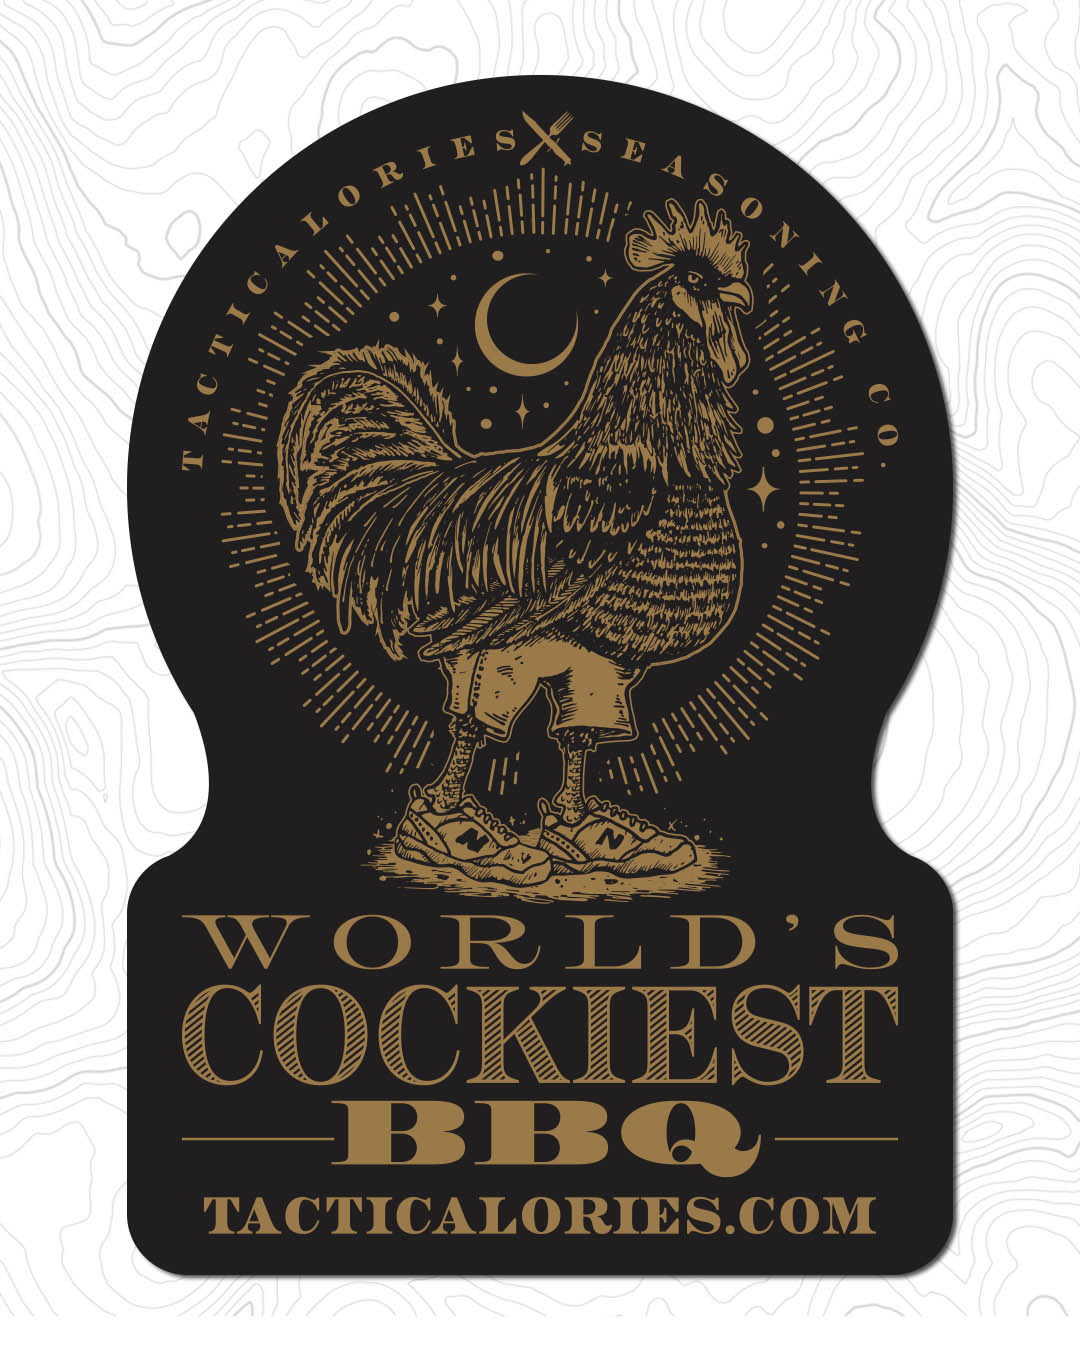 Worlds Cockiest BBQ Sticker